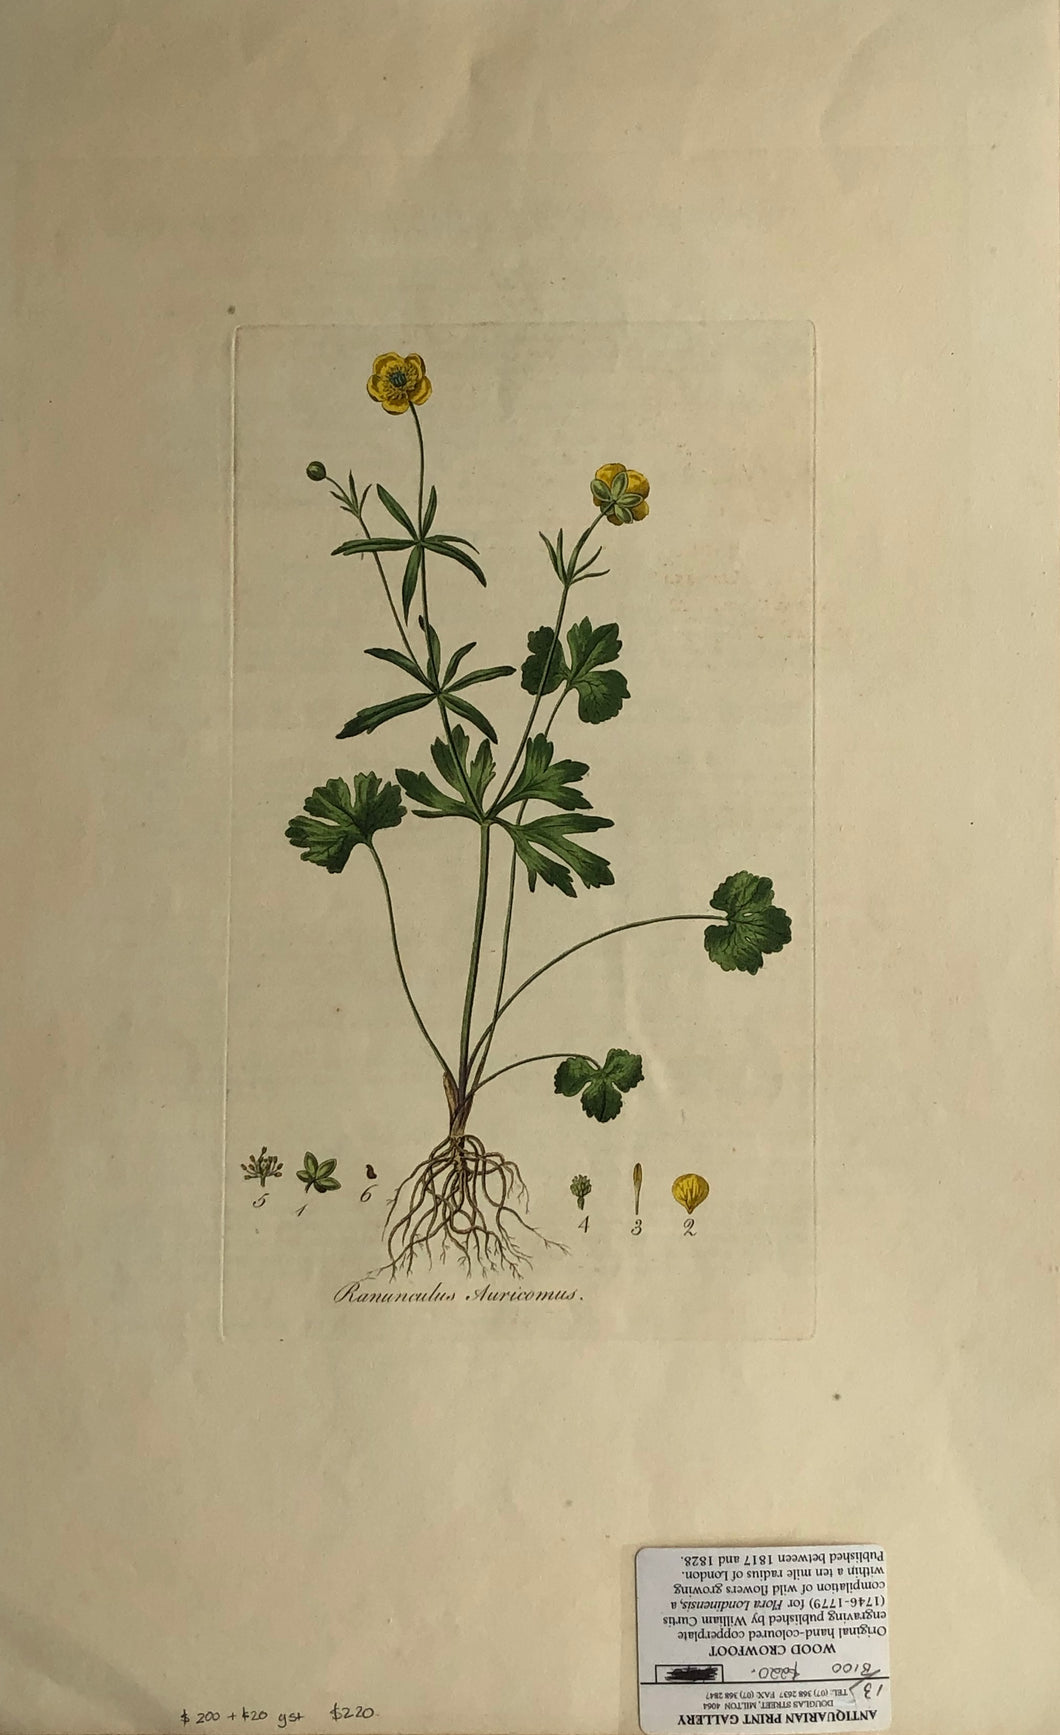 Botanical, Curtis, William: Ranunculus Auricomus, Flora Londinensis, c1817